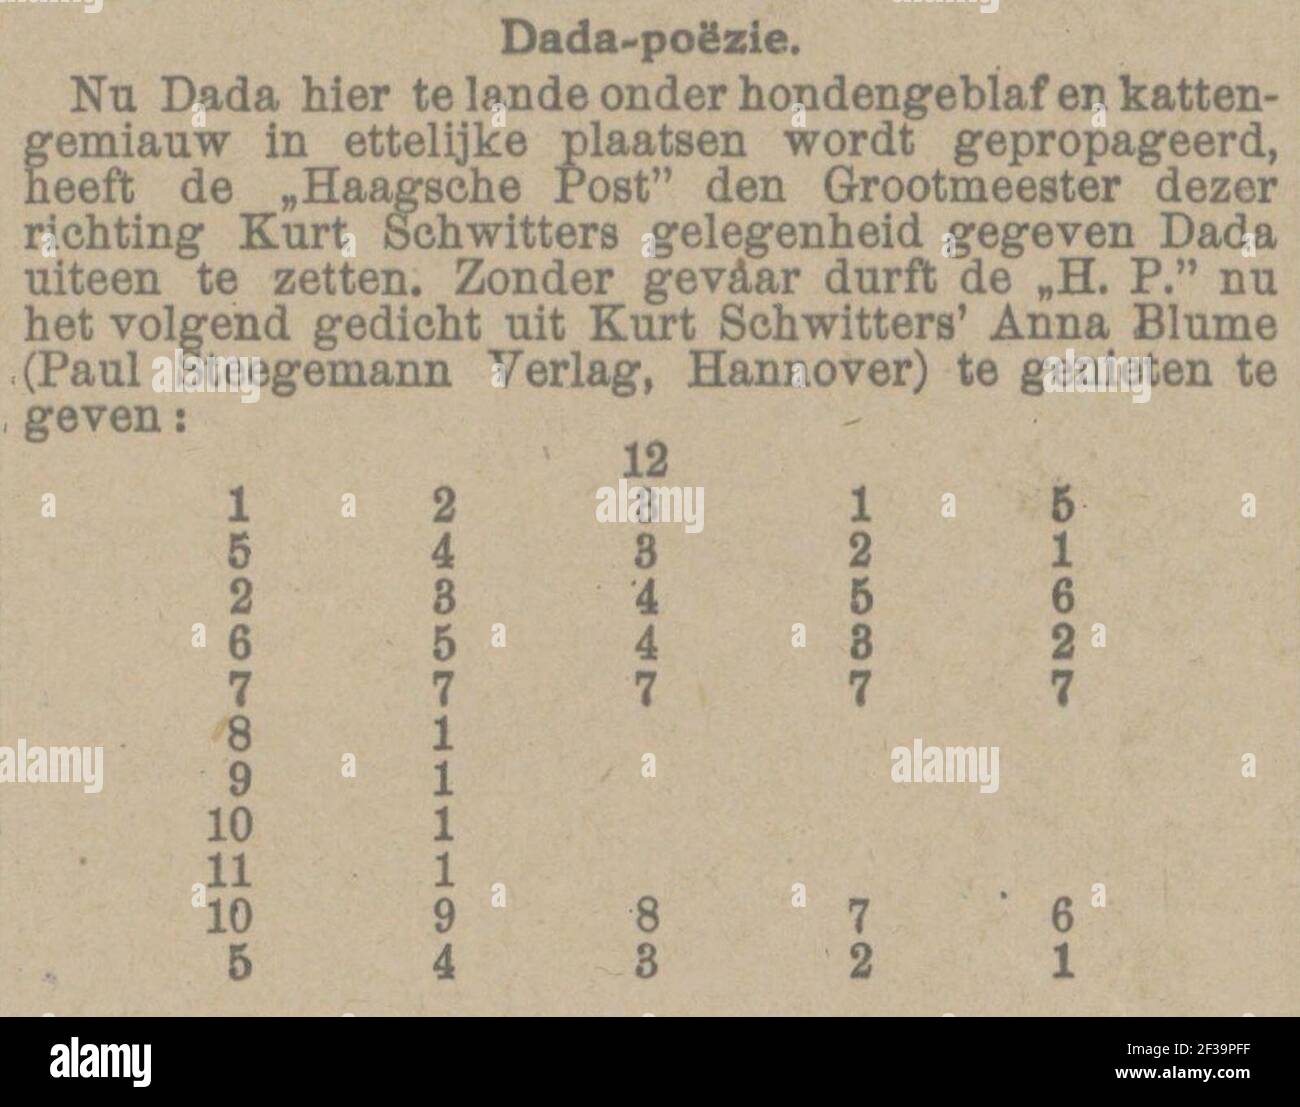 Provincia Geldersche en Nijmeegsche Courant vol 1923 no 019 Dada-poëzie. Foto Stock